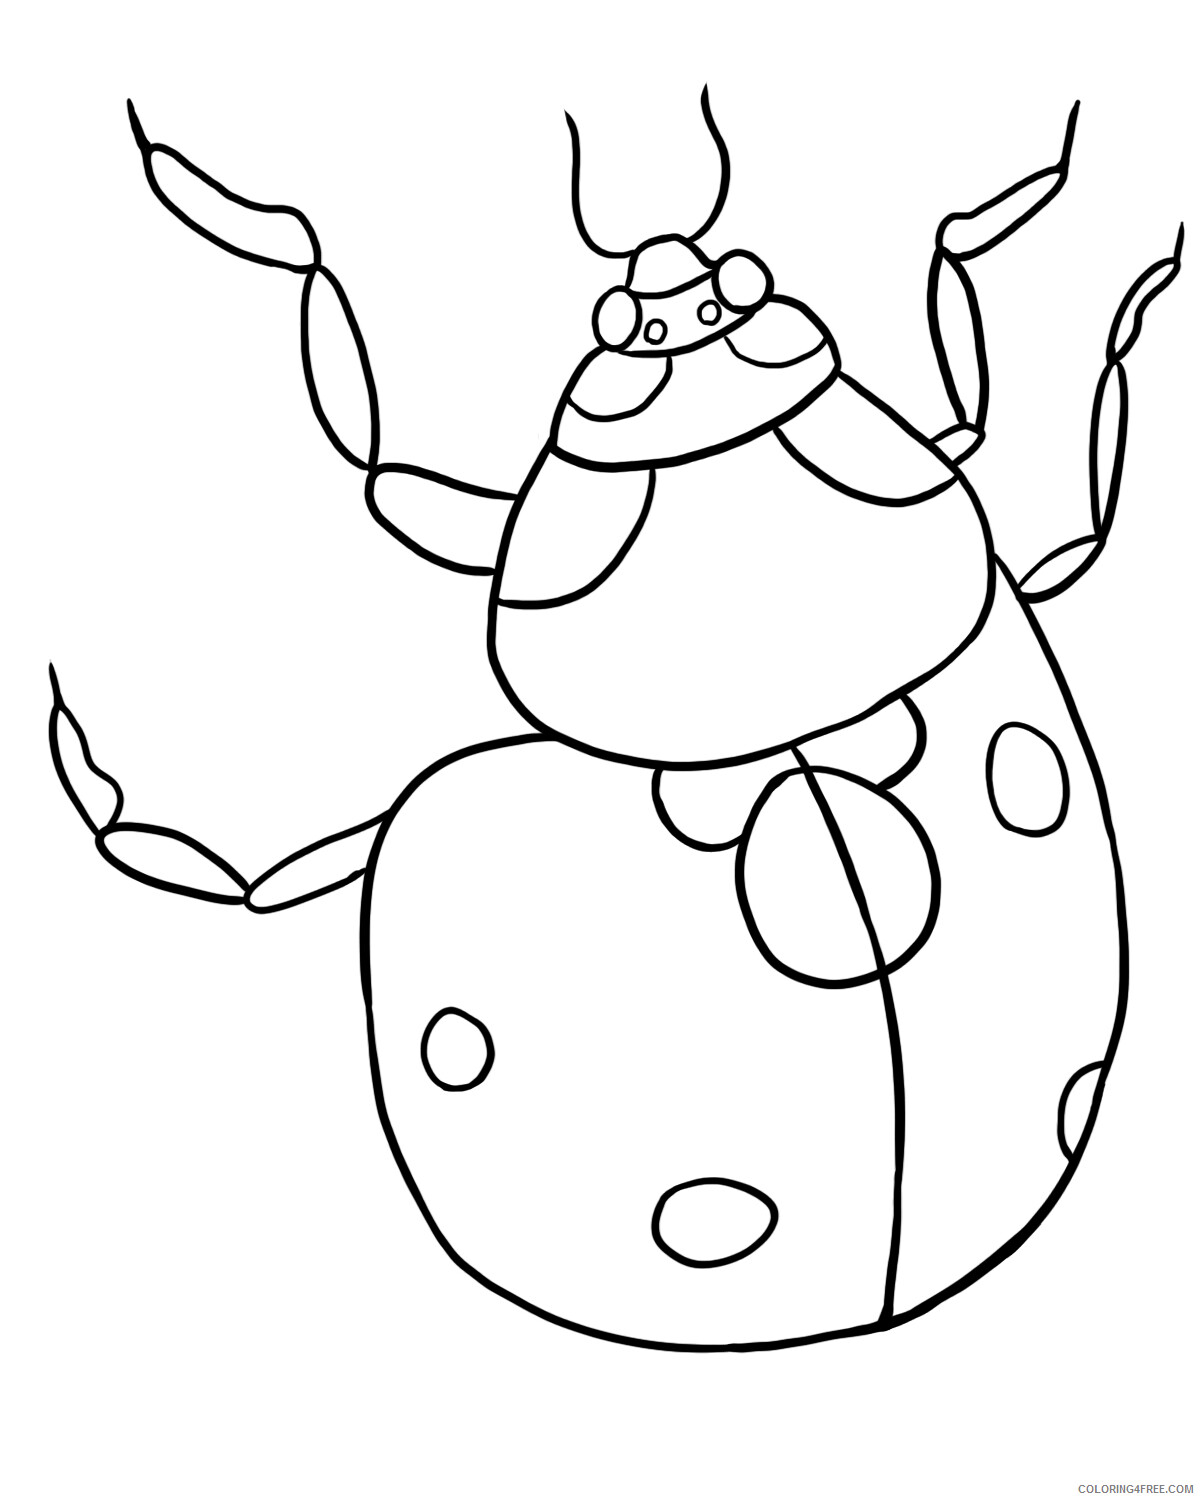 Ladybug Coloring Pages Animal Printable Sheets Free Ladybug 2021 3071 Coloring4free